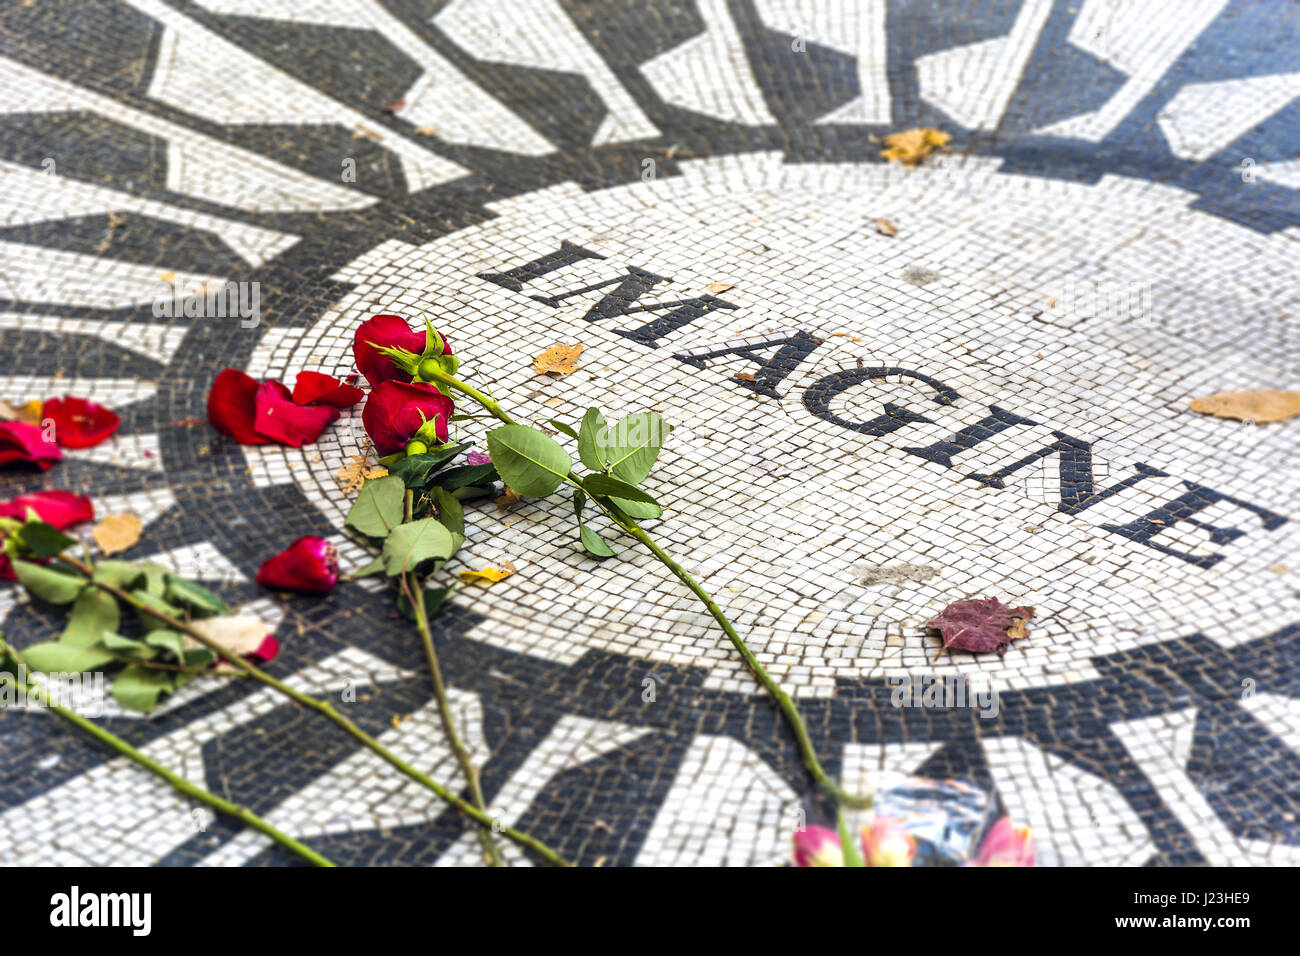 Strawberry Fields, the John Lennon Memorial in Central Park Stock Photo